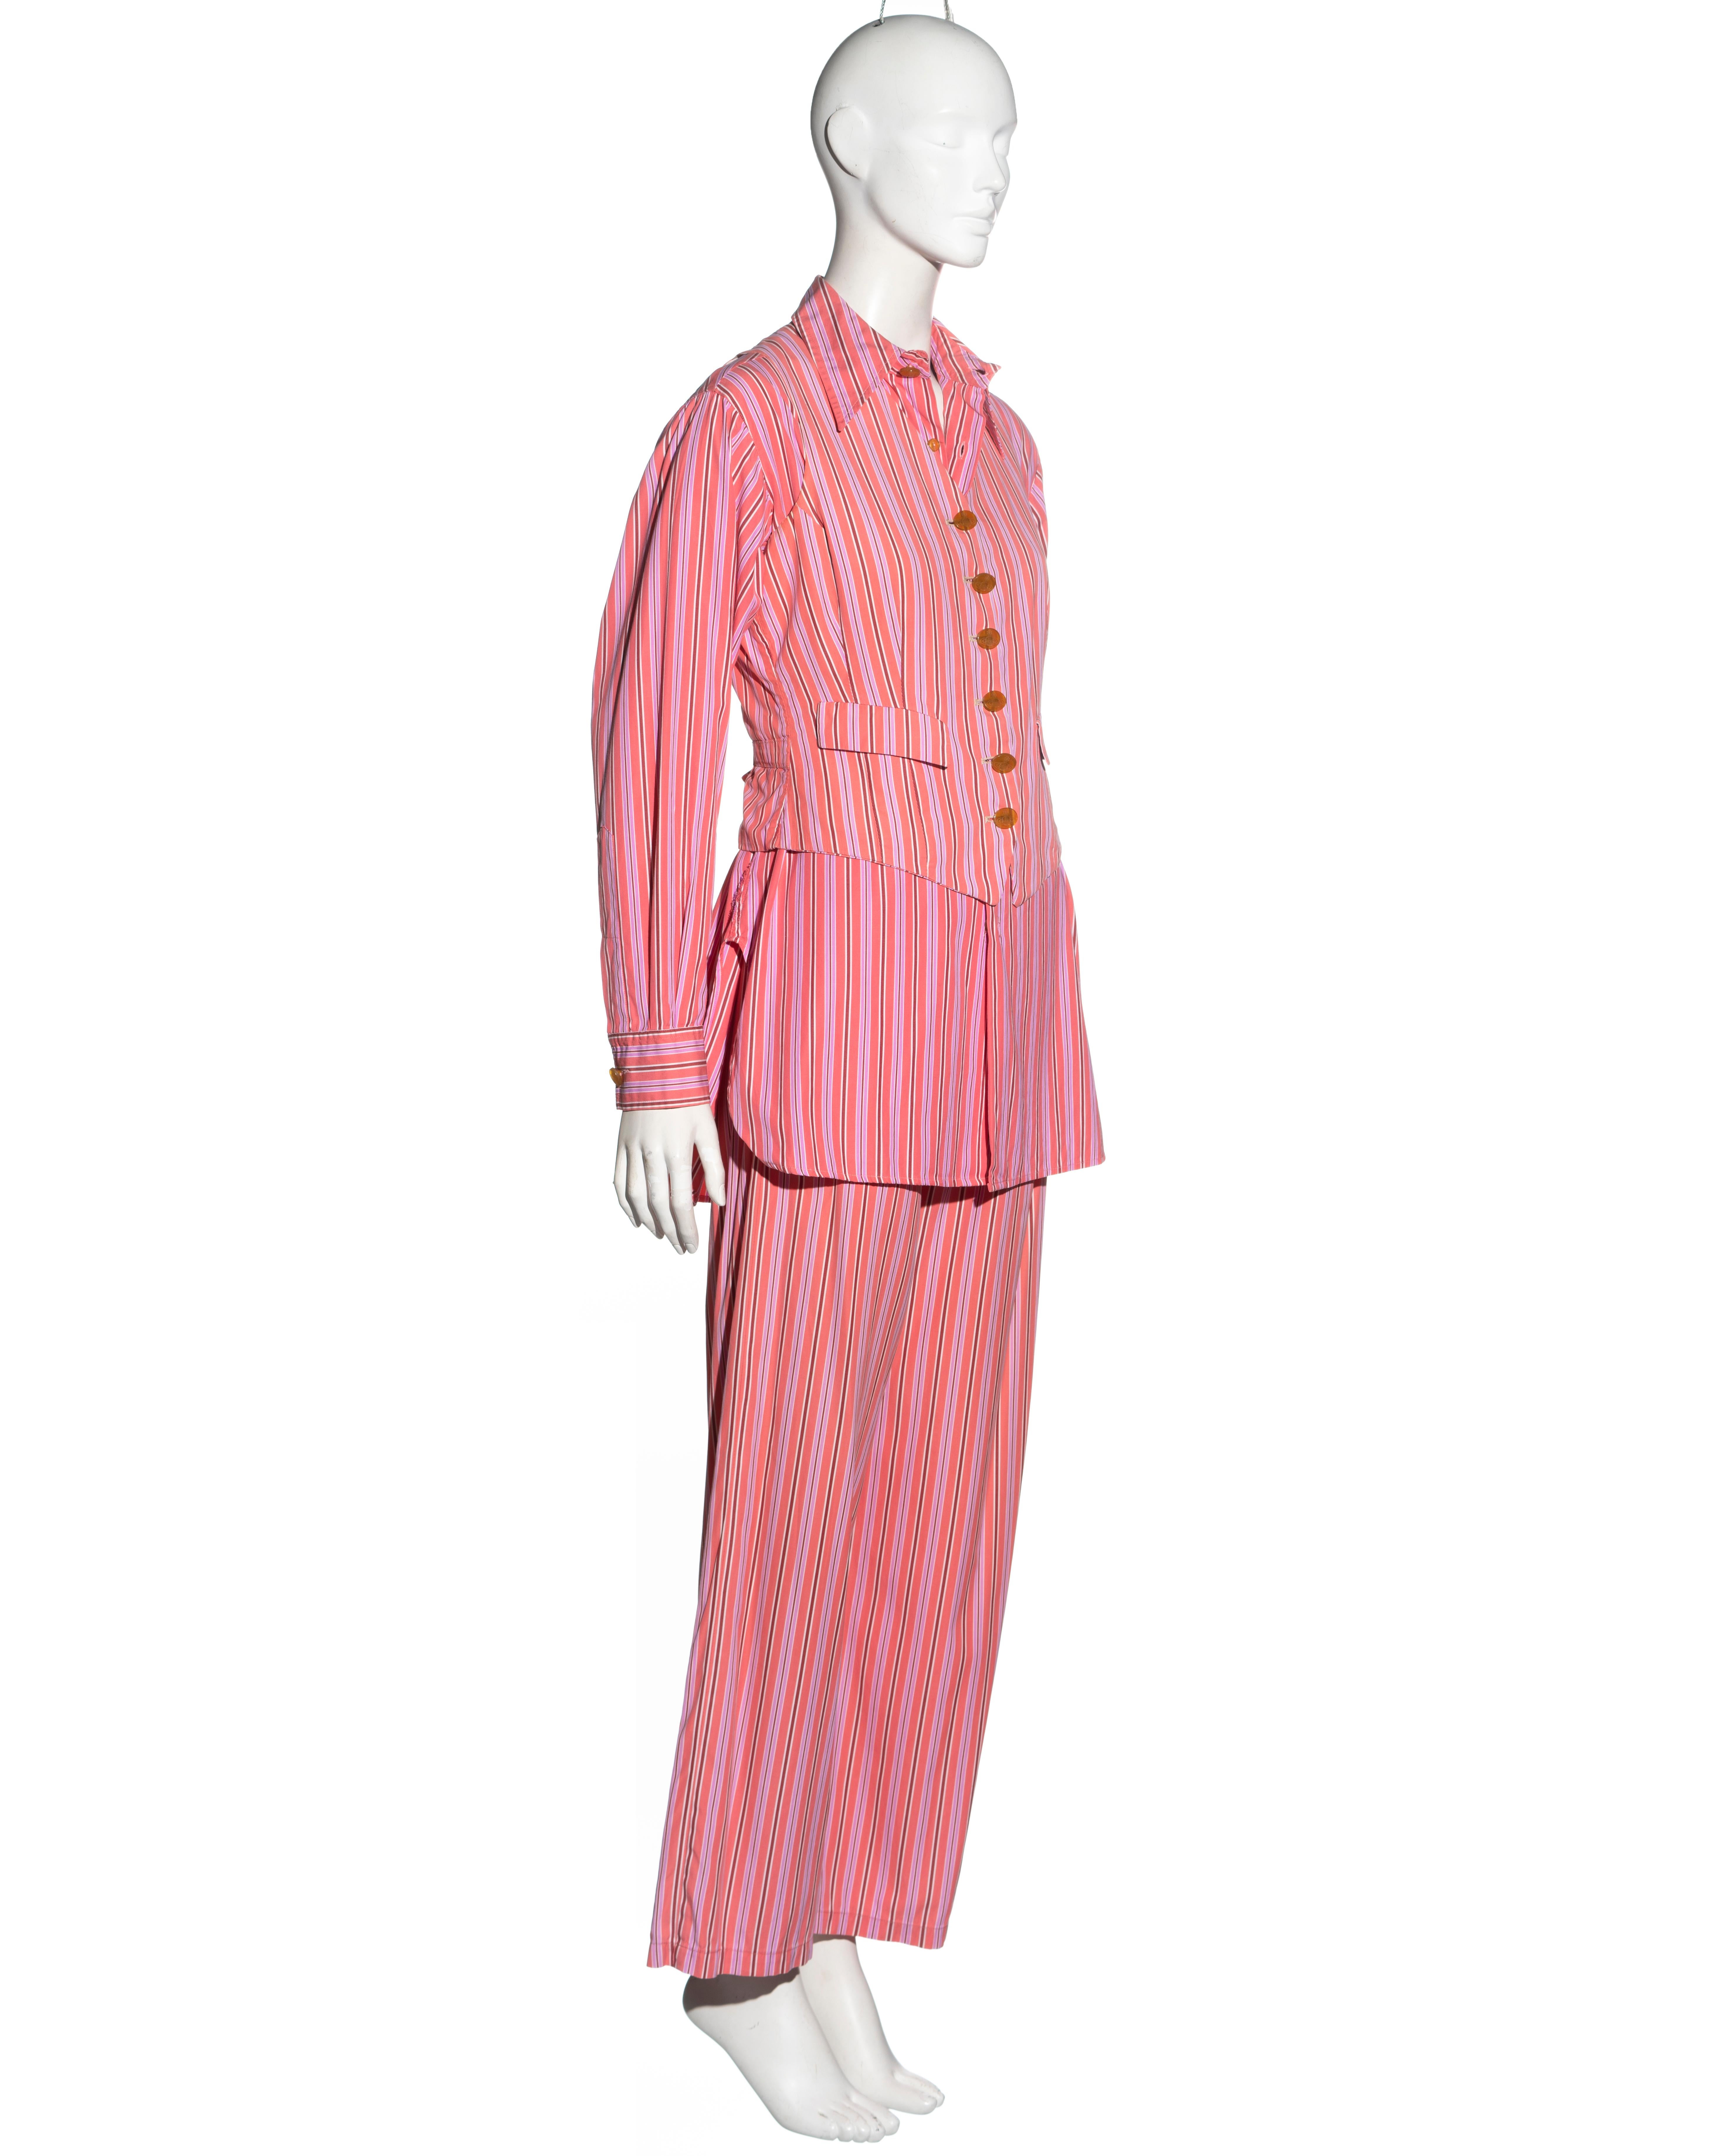 Vivienne Westwood pink striped cotton 3-piece suit, ss 1993 For Sale 4